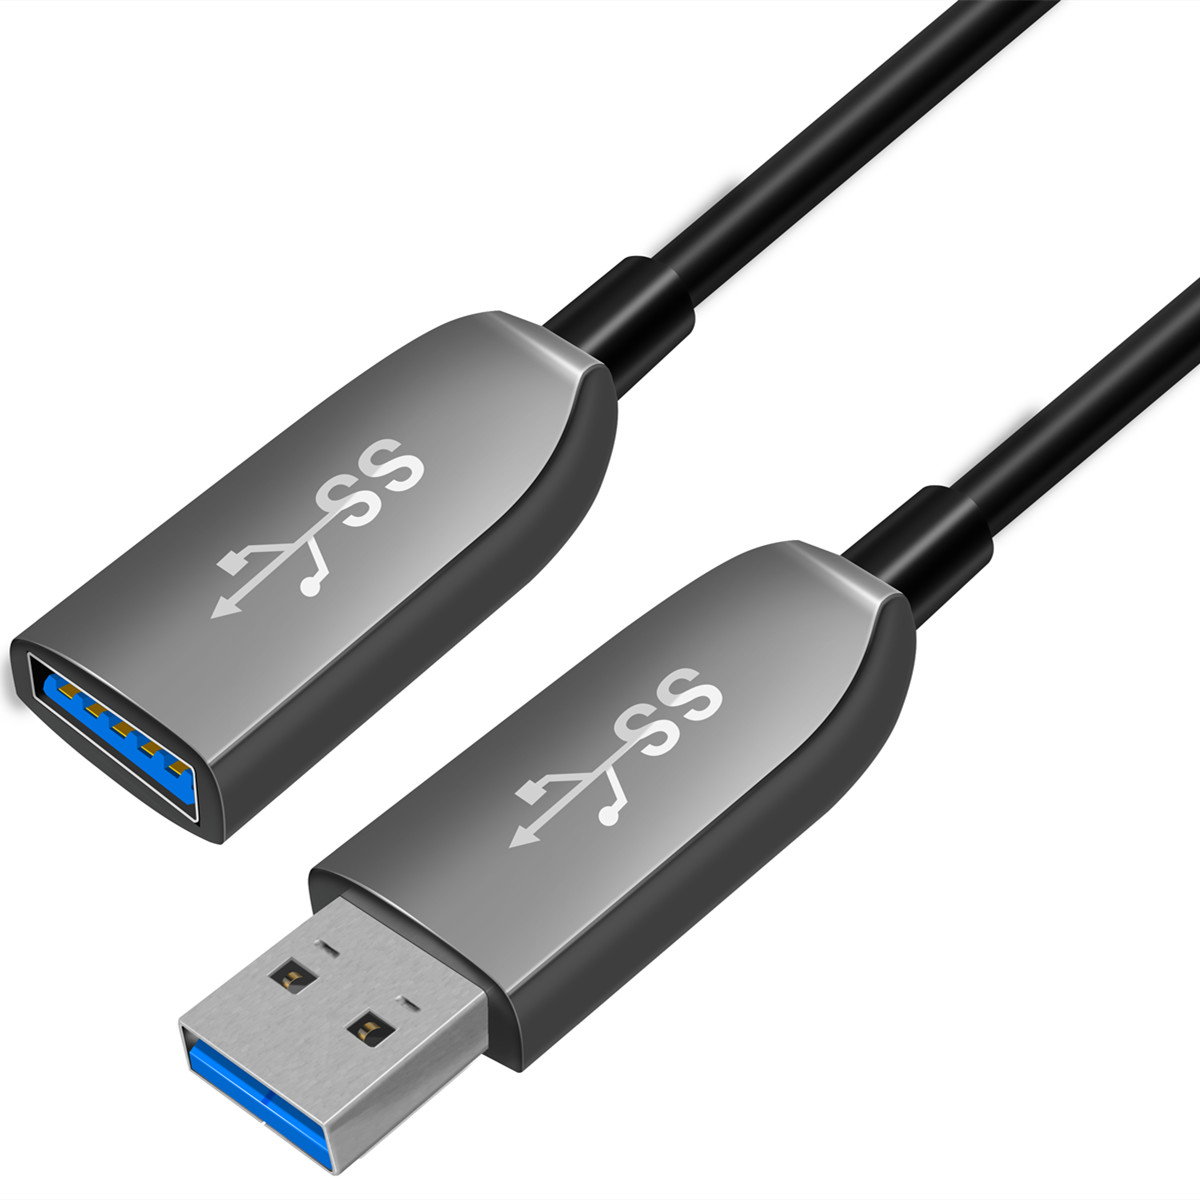 bones USB 3.0 AOC cable